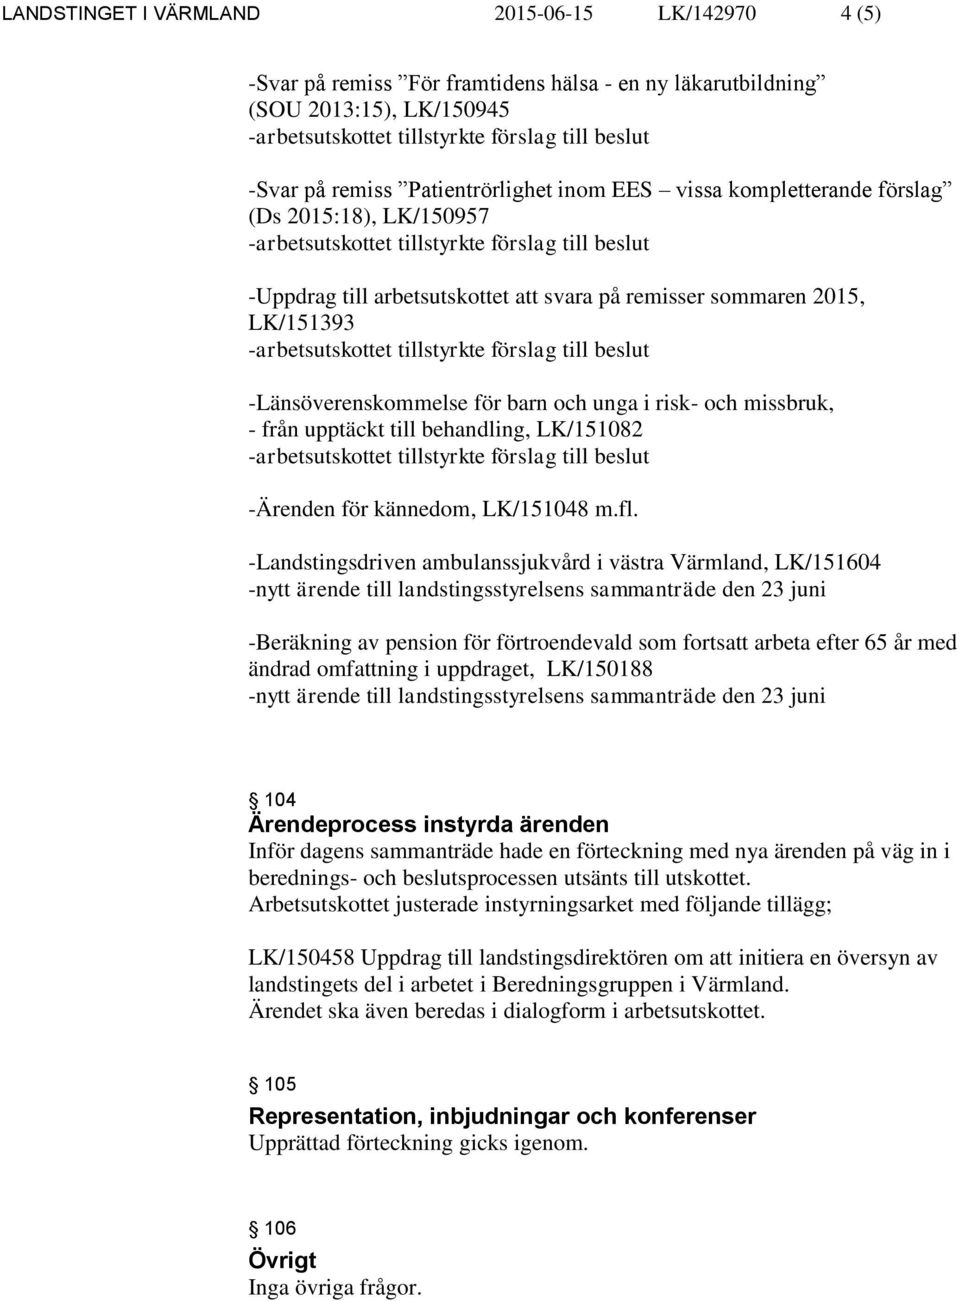 behandling, LK/151082 -Ärenden för kännedom, LK/151048 m.fl.